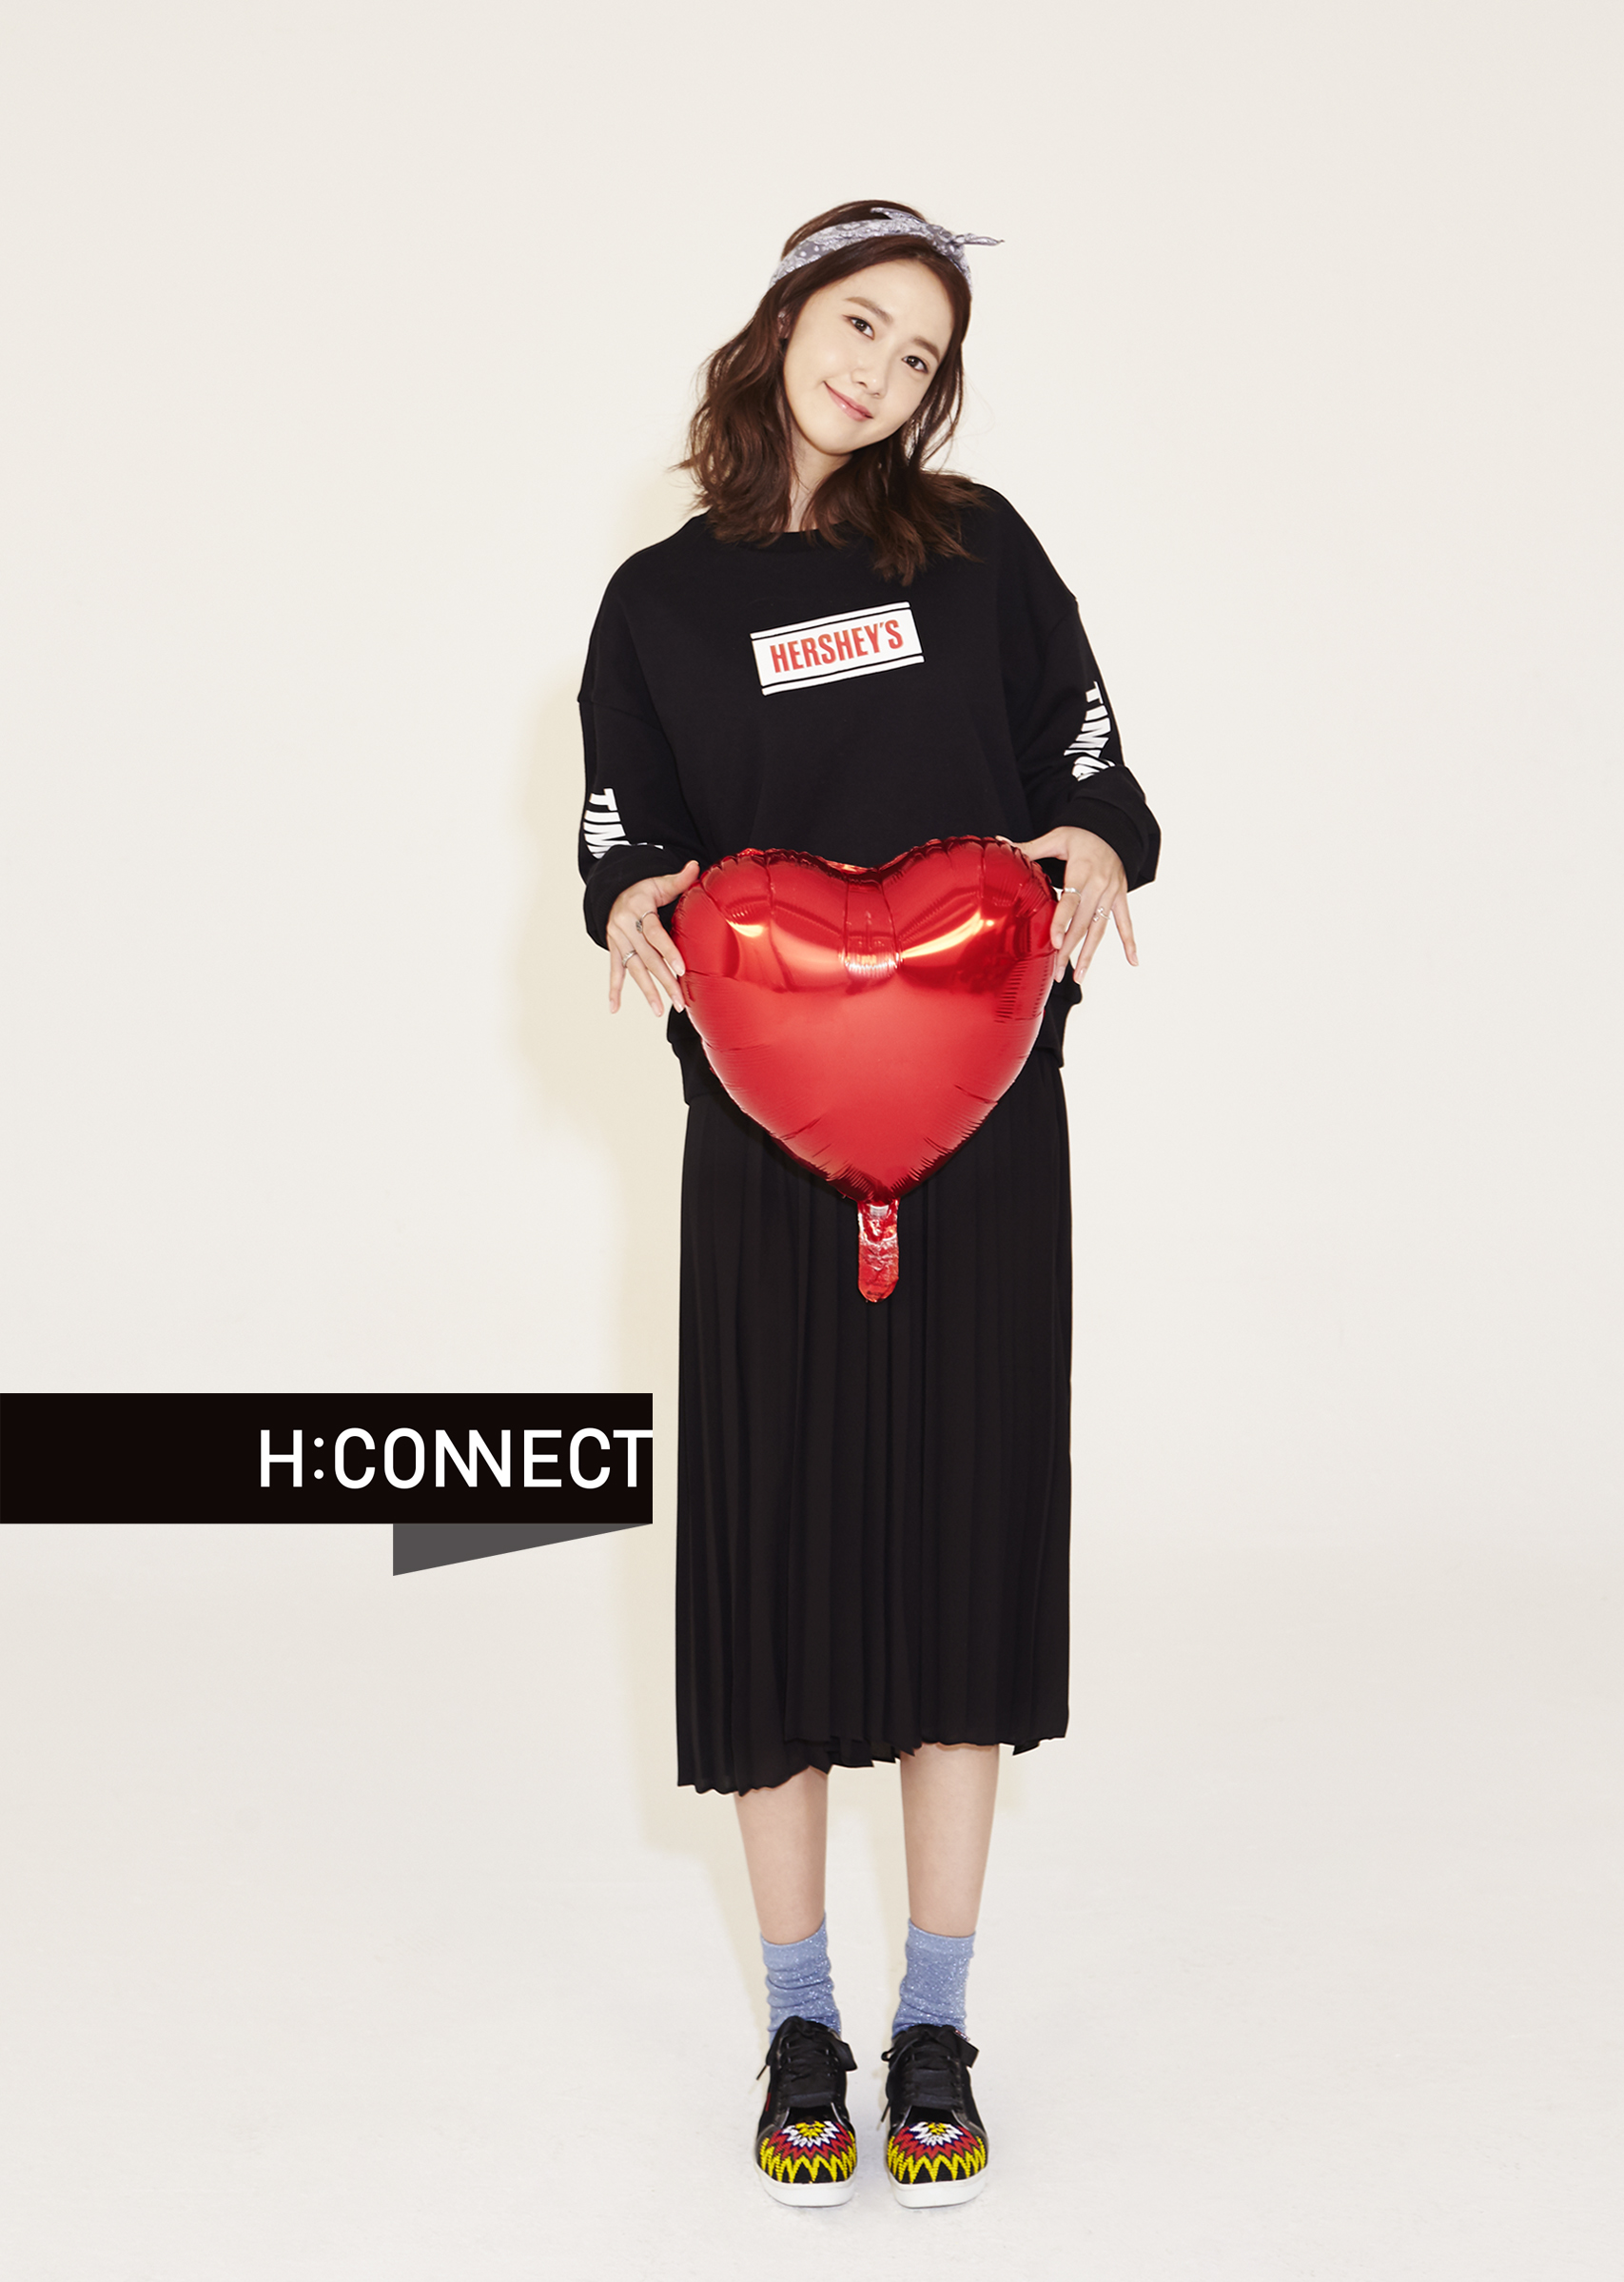 [OTHER][27-07-2015]YoonA trở thành người mẫu mới cho dòng thời trang "H:CONNECT" - Page 3 24181077104_c850d9c16c_o